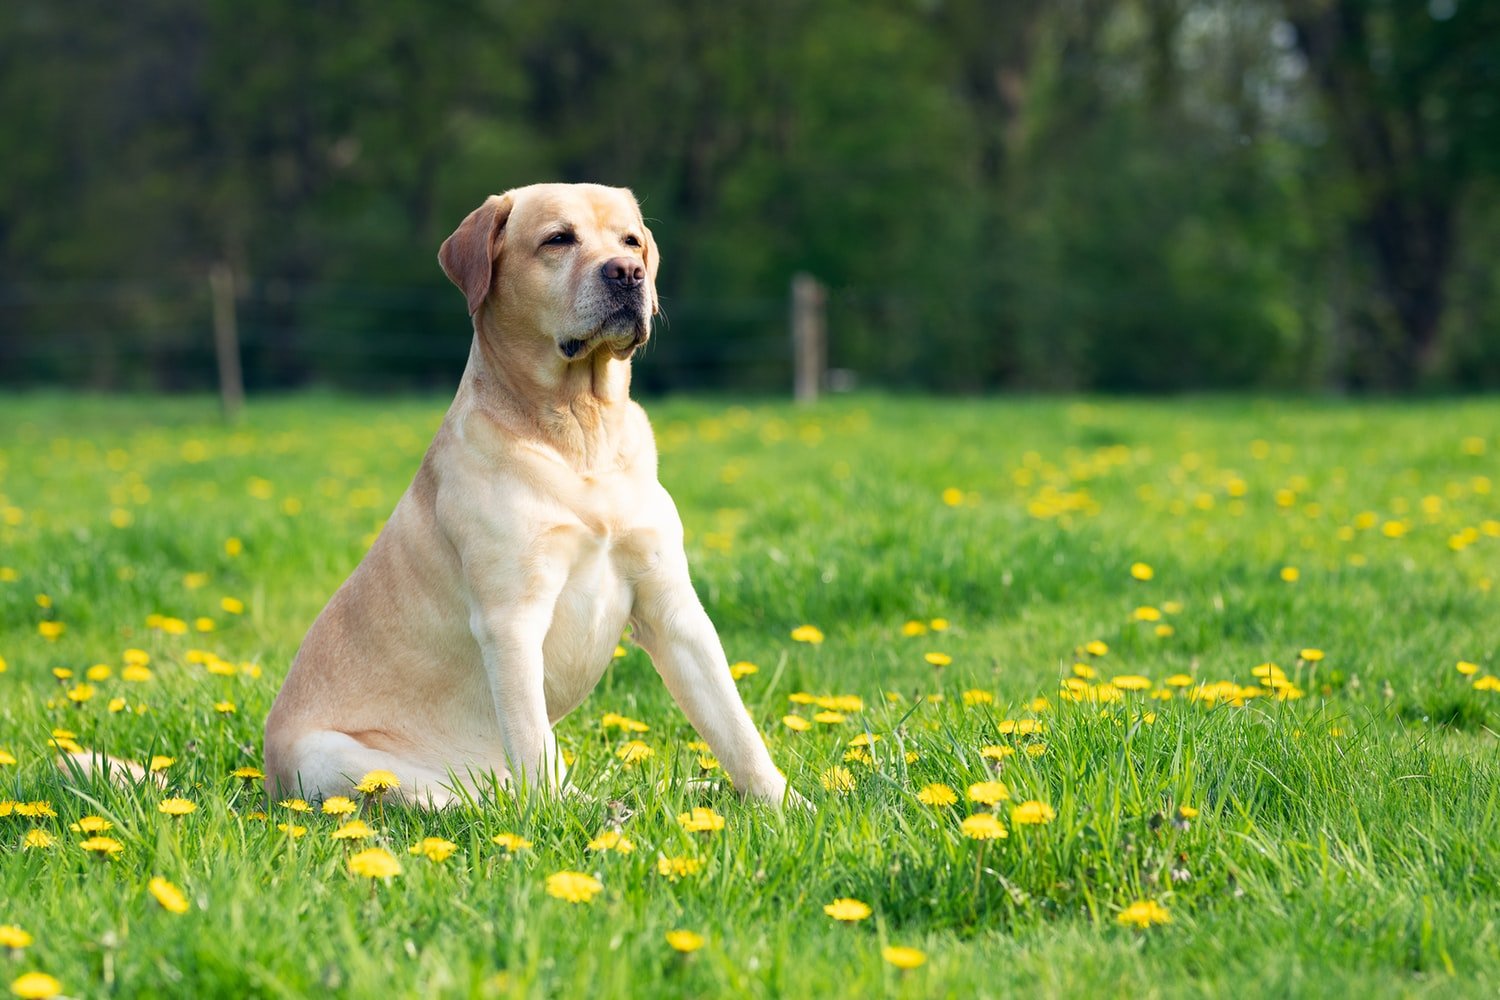 Cachorro da raça Labrador, da cor creme, sentado em um campo gramado com flores amarelas.